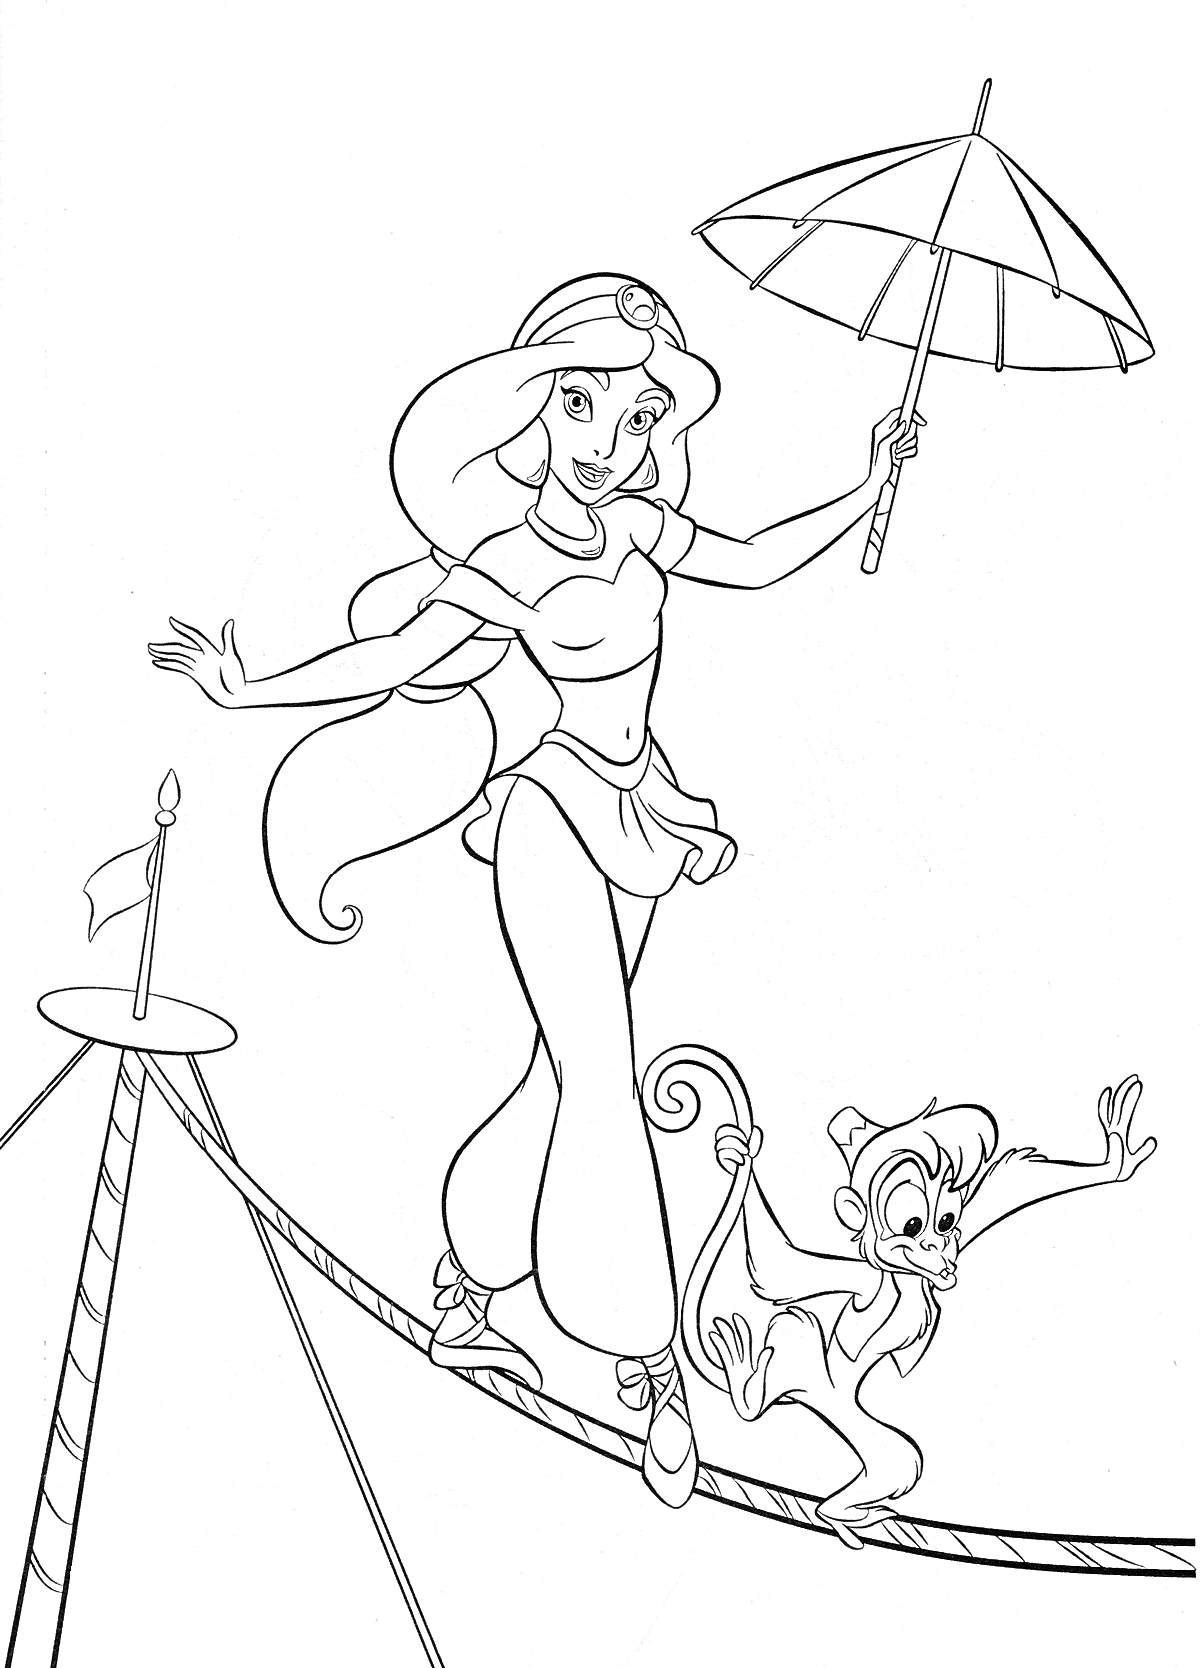 Жасмин и обезьянка Абу идут по канату, Жасмин держит зонт